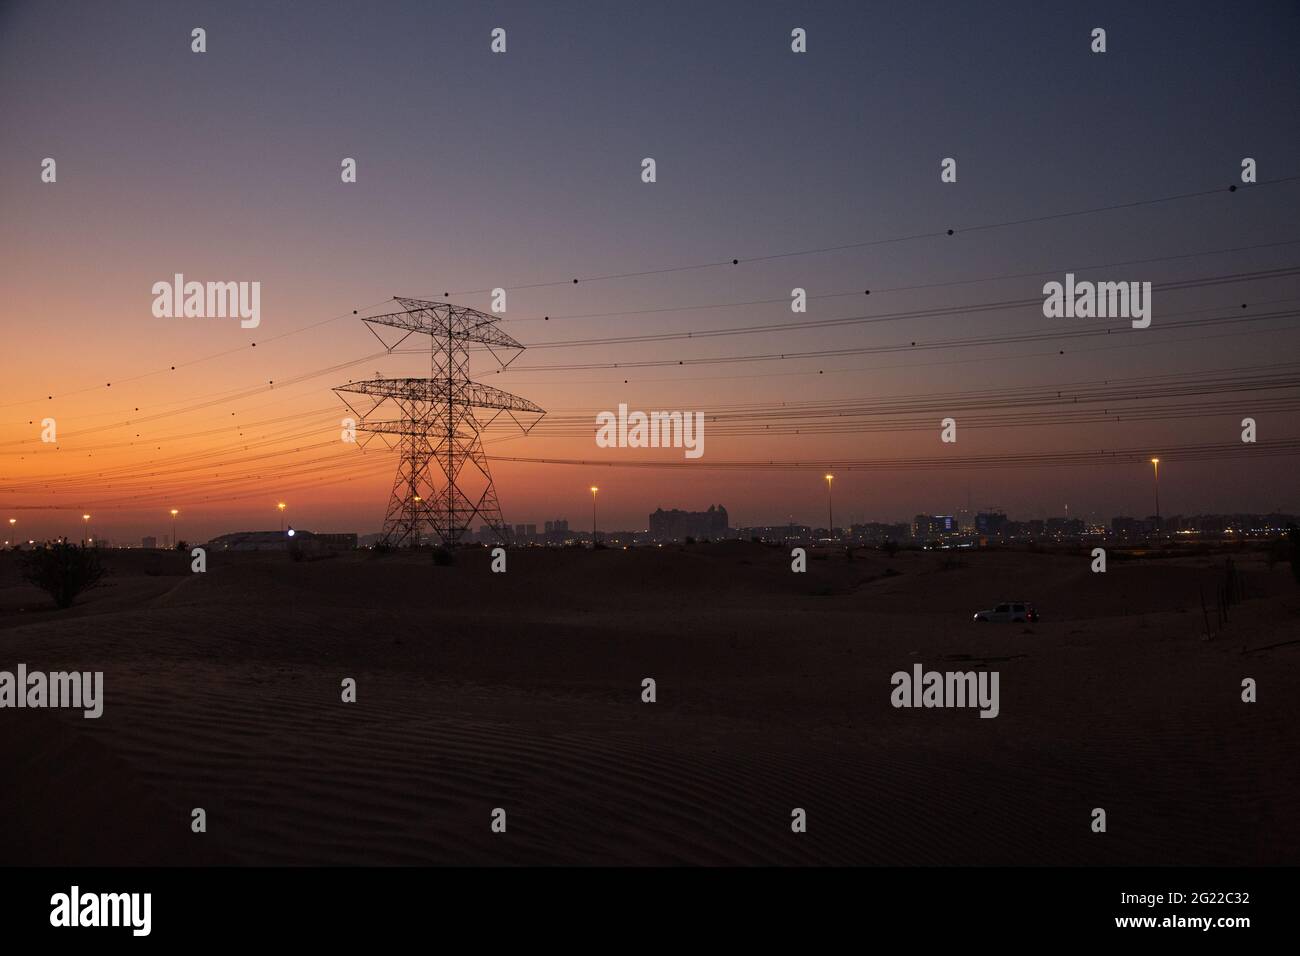 La trasmissione torreggia nel deserto di Dubai subito dopo il tramonto, quando l'ultimo del sole si illumina ancora nel cielo arancione. Foto Stock